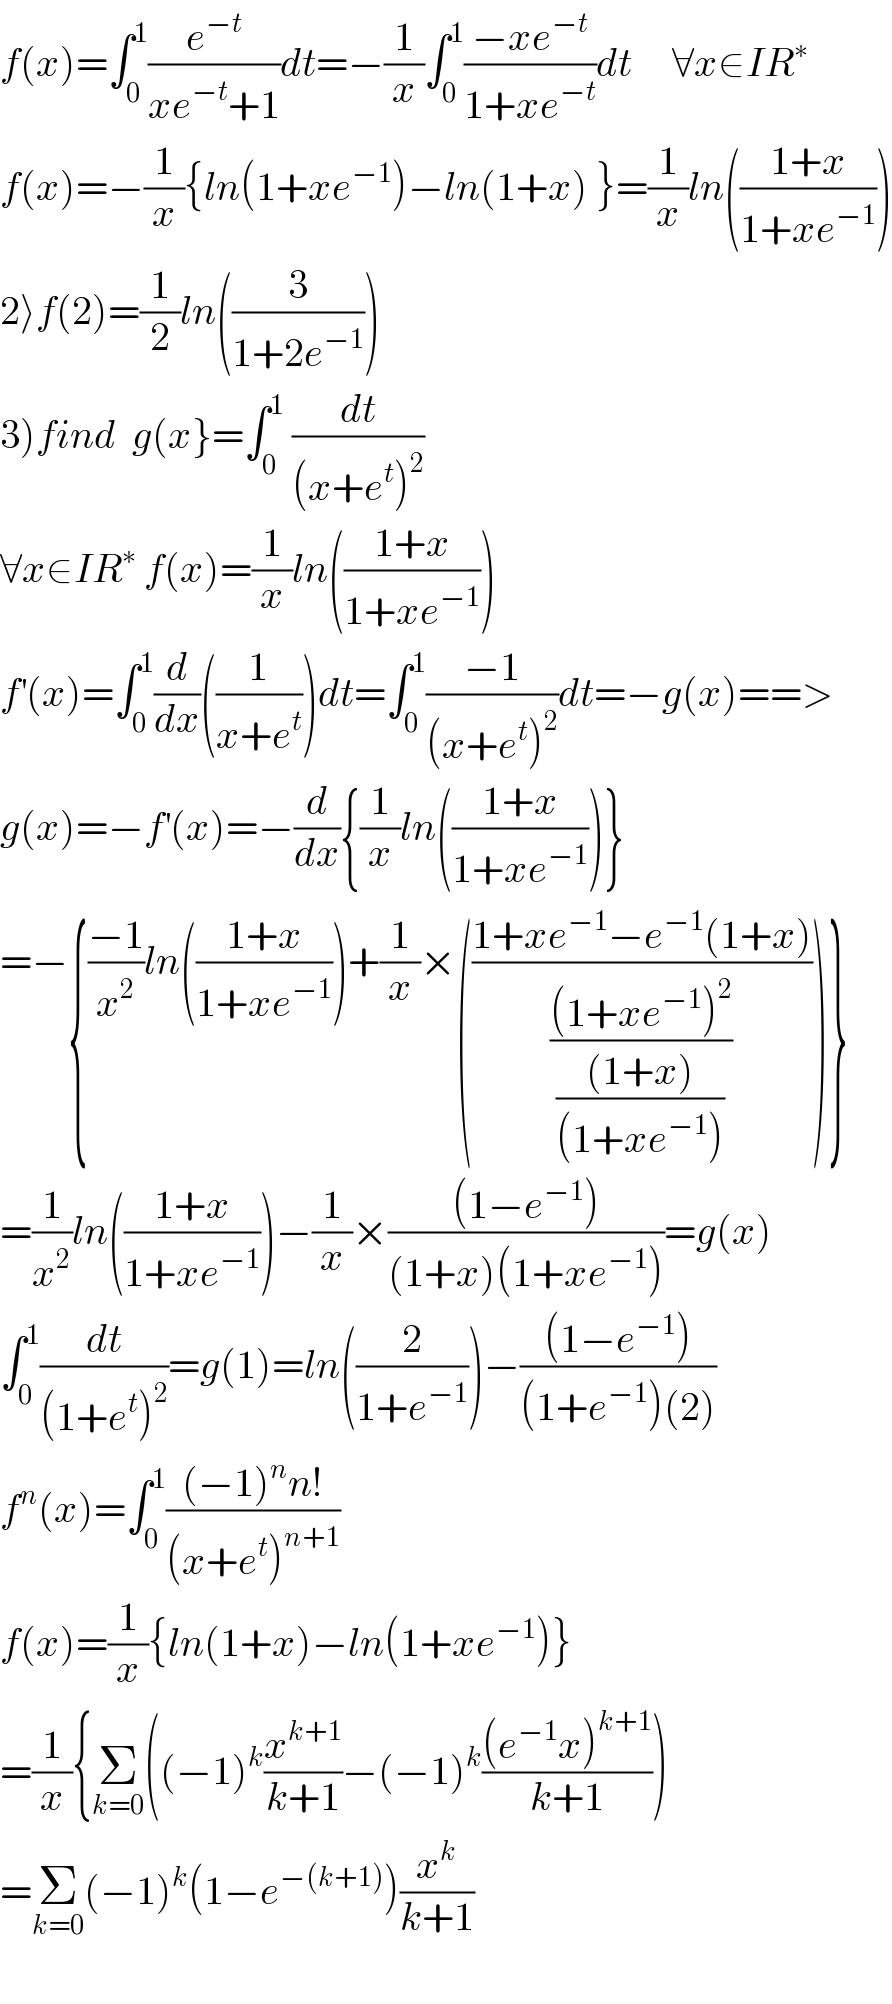 f(x)=∫_0 ^1 (e^(−t) /(xe^(−t) +1))dt=−(1/x)∫_0 ^1 ((−xe^(−t) )/(1+xe^(−t) ))dt     ∀x∈IR^∗   f(x)=−(1/x){ln(1+xe^(−1) )−ln(1+x) }=(1/x)ln(((1+x)/(1+xe^(−1) )))  2⟩f(2)=(1/2)ln((3/(1+2e^(−1) )))  3)find  g(x}=∫_0 ^1  (dt/((x+e^t )^2 ))  ∀x∈IR^∗  f(x)=(1/x)ln(((1+x)/(1+xe^(−1) )))  f^′ (x)=∫_0 ^1 (d/dx)((1/(x+e^t )))dt=∫_0 ^1 ((−1)/((x+e^t )^2 ))dt=−g(x)==>  g(x)=−f^′ (x)=−(d/dx){(1/x)ln(((1+x)/(1+xe^(−1) )))}  =−{((−1)/x^2 )ln(((1+x)/(1+xe^(−1) )))+(1/x)×(((1+xe^(−1) −e^(−1) (1+x))/(((1+xe^(−1) )^2 )/(((1+x))/((1+xe^(−1) ))))))}  =(1/x^2 )ln(((1+x)/(1+xe^(−1) )))−(1/x)×(((1−e^(−1) ))/((1+x)(1+xe^(−1) )))=g(x)  ∫_0 ^1 (dt/((1+e^t )^2 ))=g(1)=ln((2/(1+e^(−1) )))−(((1−e^(−1) ))/((1+e^(−1) )(2)))  f^n (x)=∫_0 ^1 (((−1)^n n!)/((x+e^t )^(n+1) ))  f(x)=(1/x){ln(1+x)−ln(1+xe^(−1) )}  =(1/x){Σ_(k=0) ((−1)^k (x^(k+1) /(k+1))−(−1)^k (((e^(−1) x)^(k+1) )/(k+1)))  =Σ_(k=0) (−1)^k (1−e^(−(k+1)) )(x^k /(k+1))    